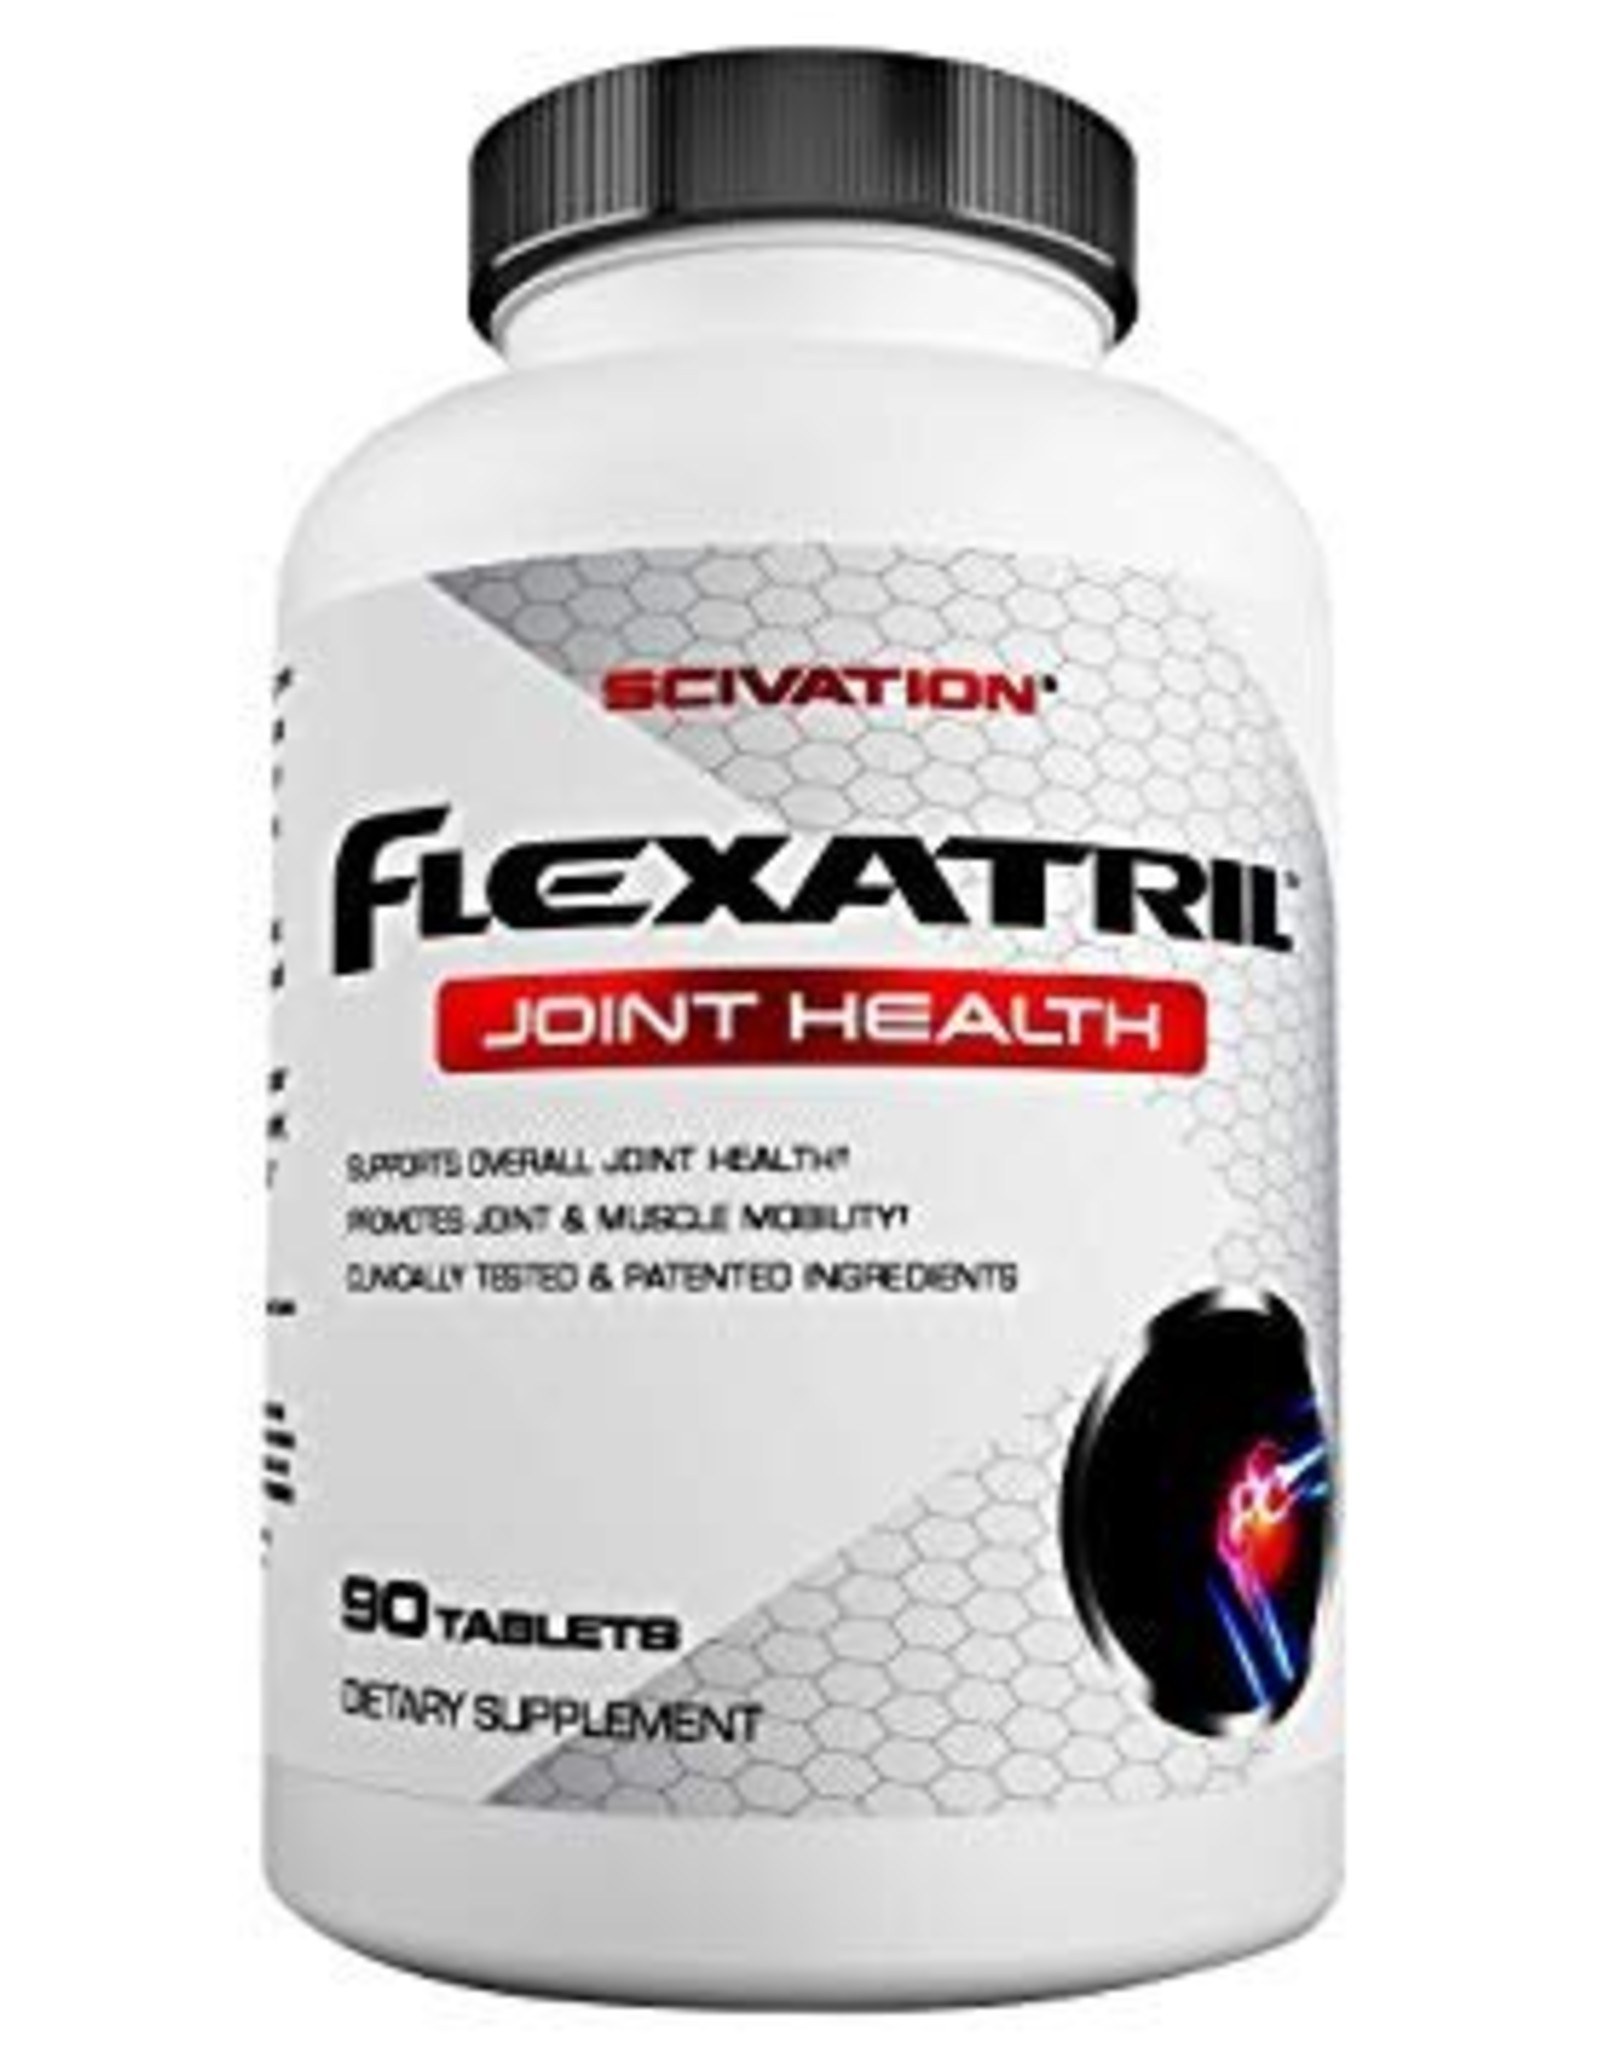 Scivation Flexatril Joint Health